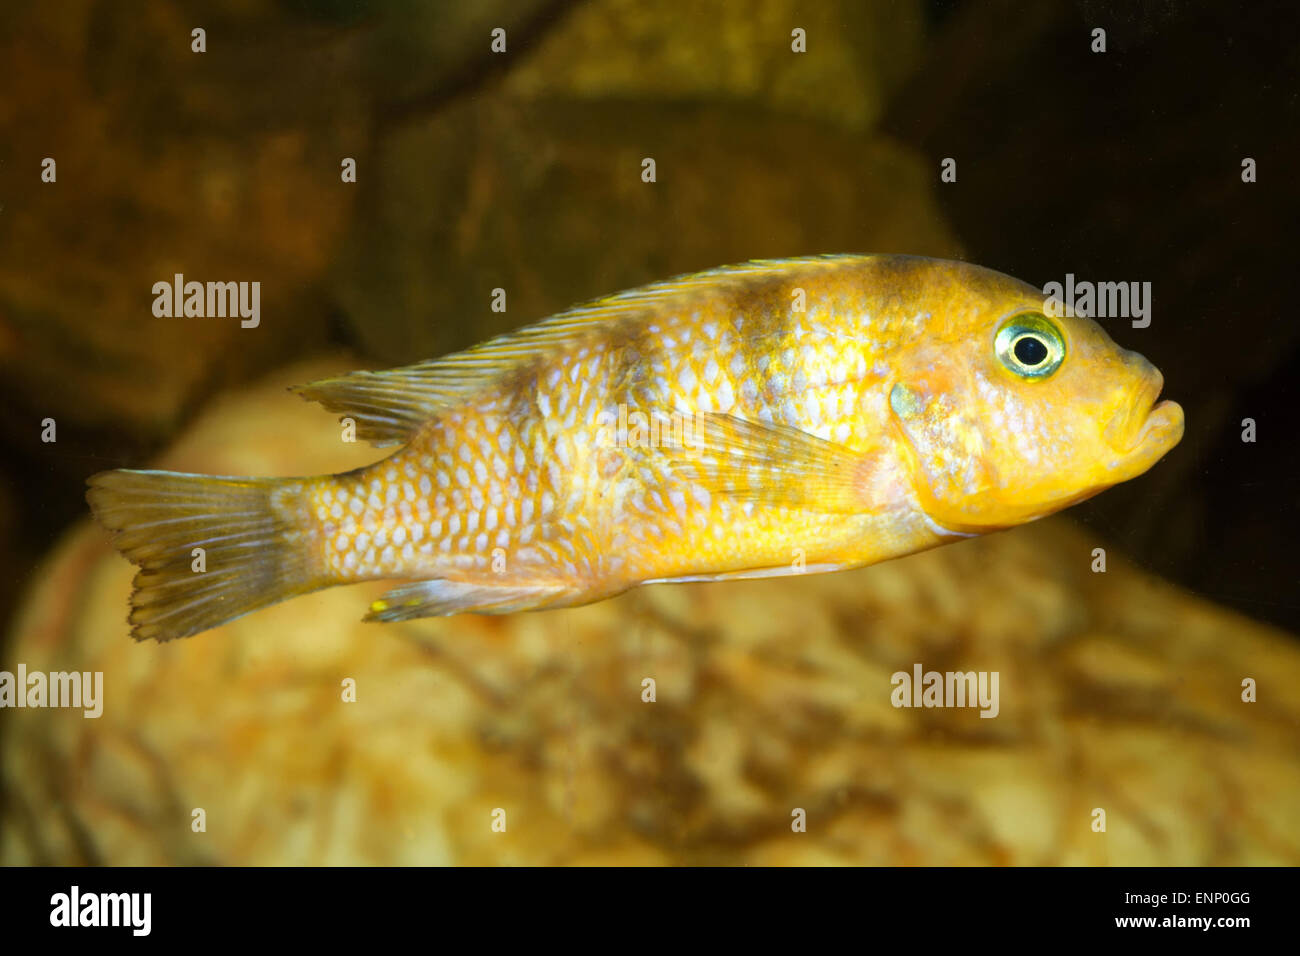 Aquarium cichlid fish from the genus Pseudotropheus. Stock Photo